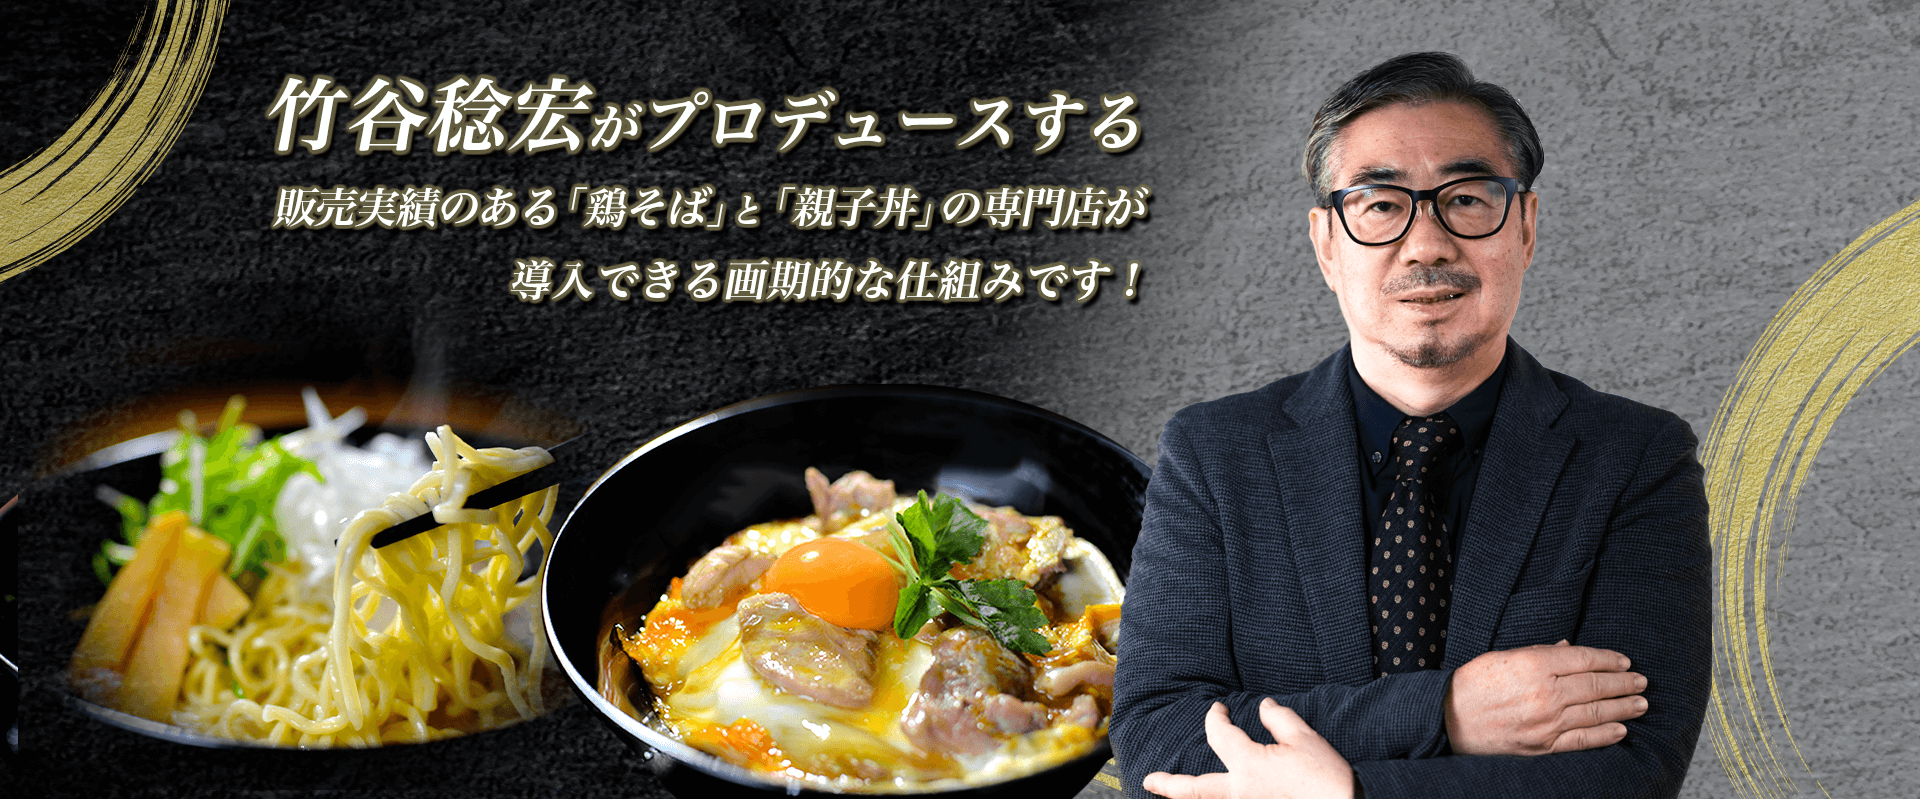 竹谷稔宏がプロデュースする販売実績のある「鶏そば」と「親子丼」の専門店が導入できる画期的な仕組みです！